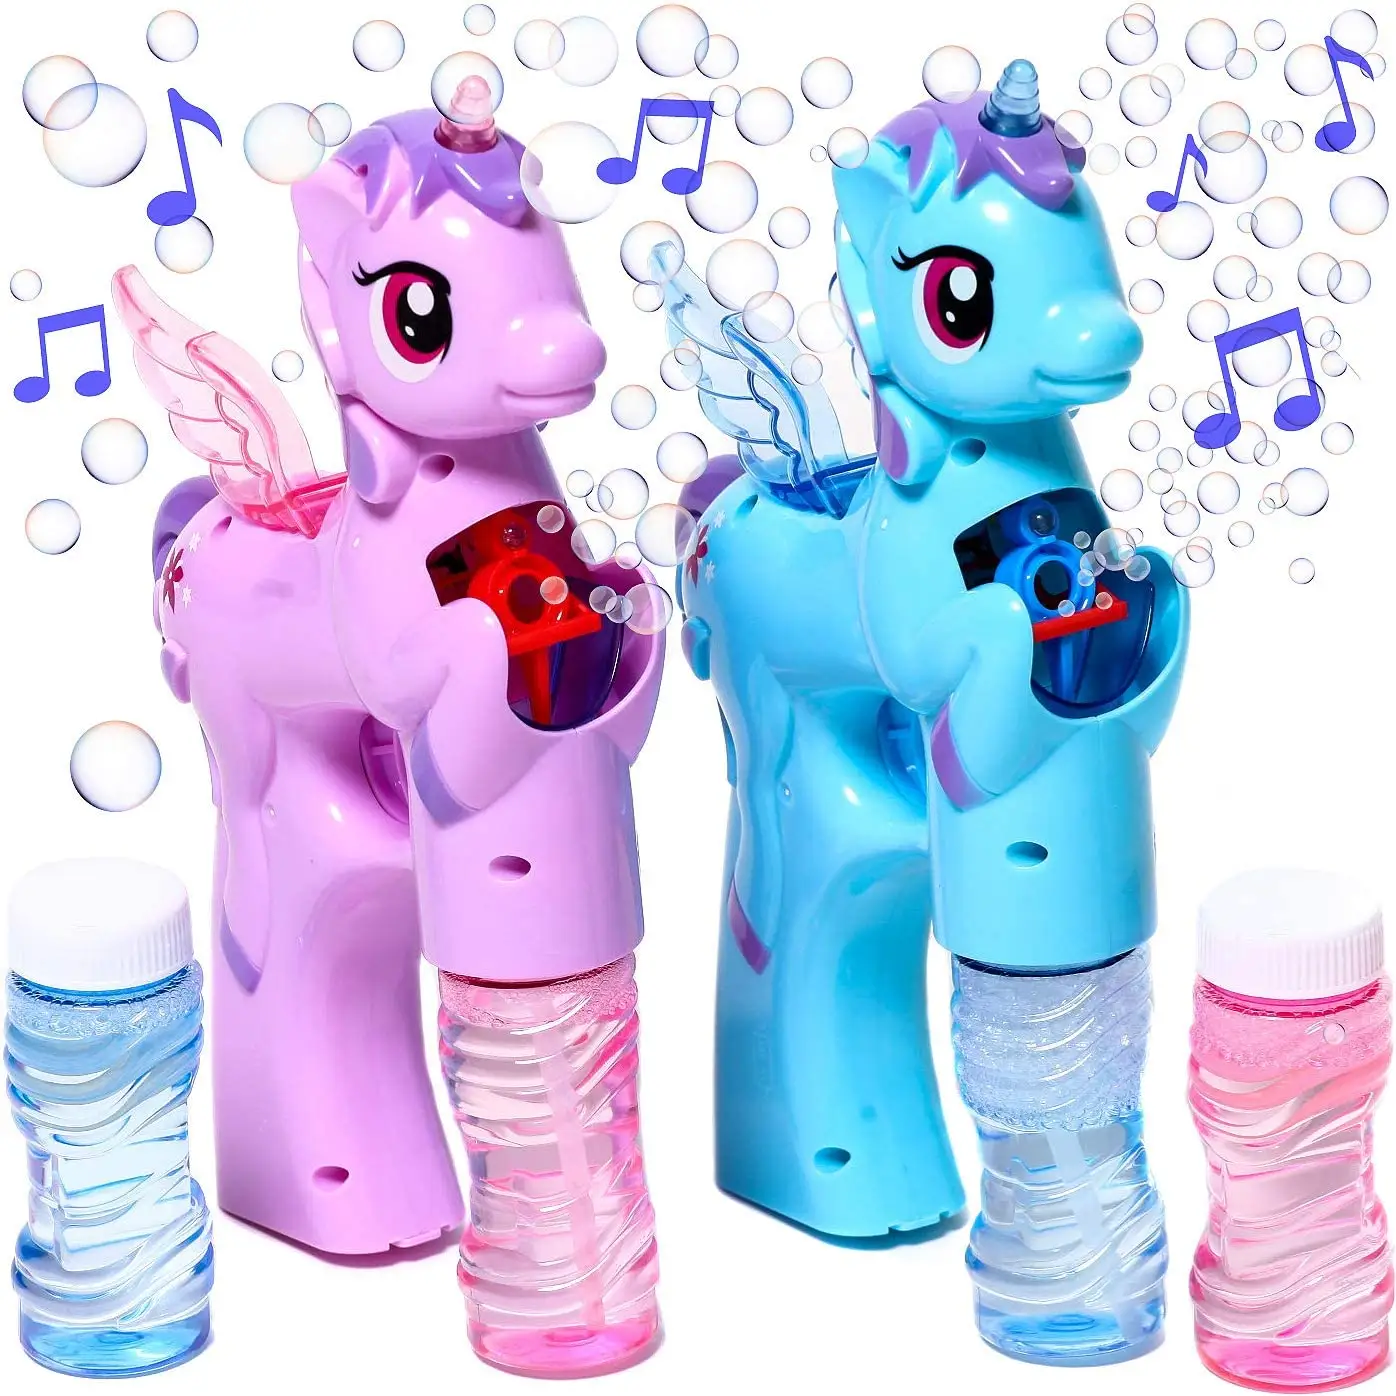 Unicorn Bubble Blaster mit Licht und Ton, enthält 1 Bubble Gun und 2 Flaschen Bubble Solution für Mädchen und Jungen